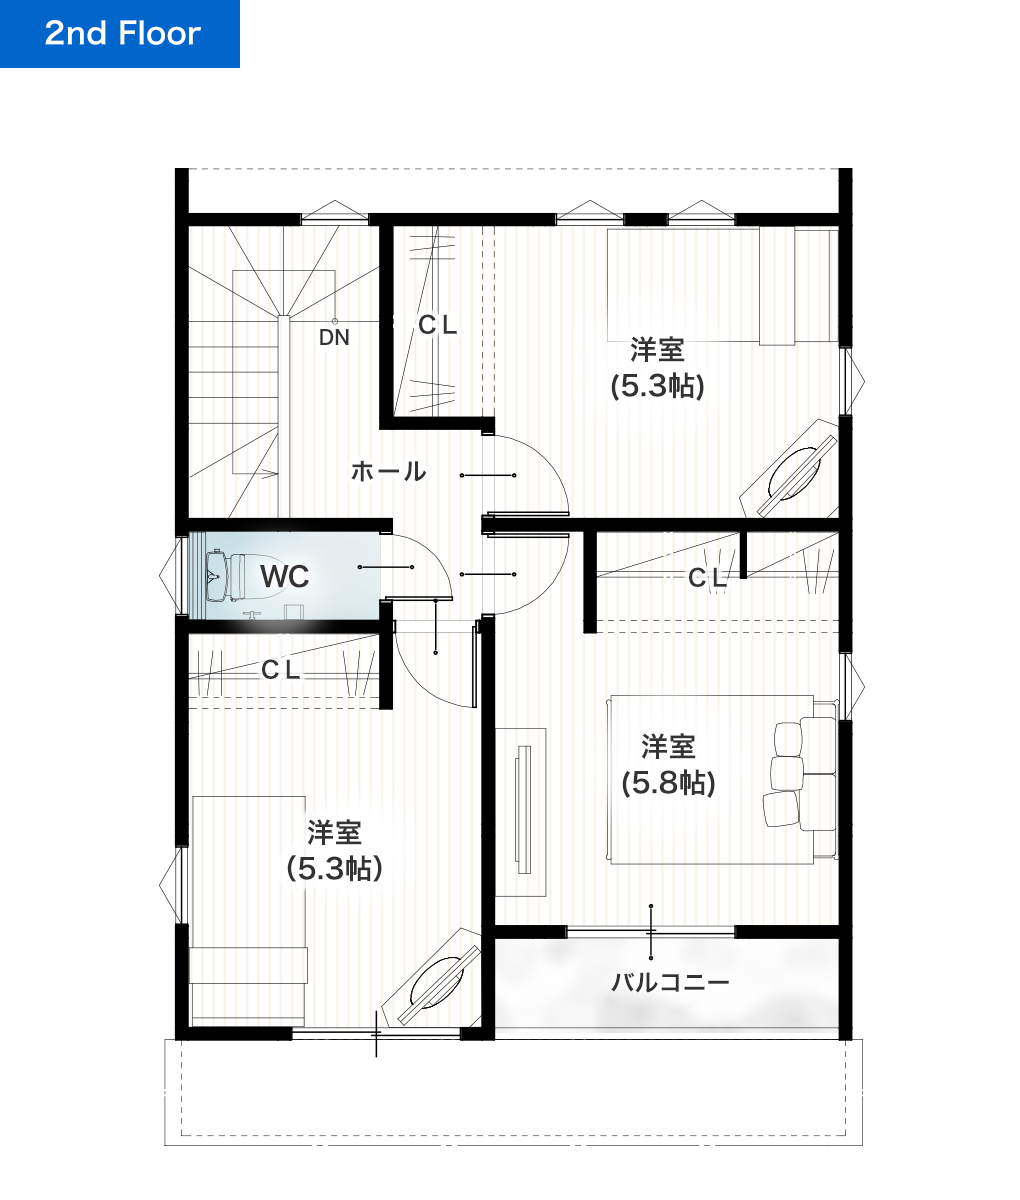 合志市須屋13期B 26坪 4LDK 建売・一戸建ての新築物件 2階間取り図